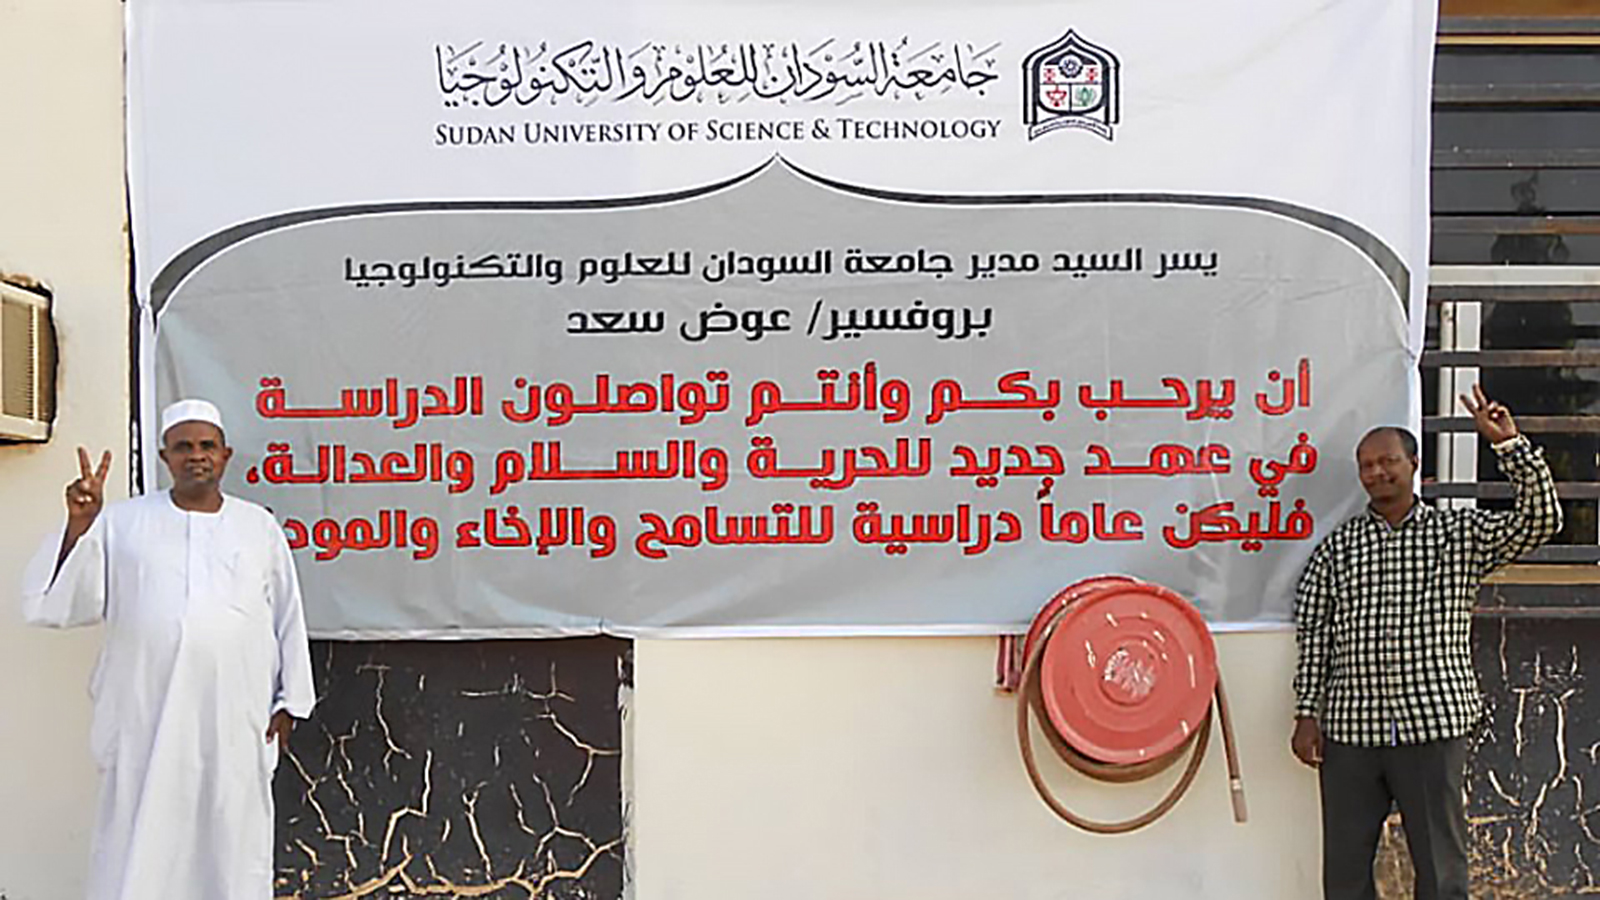 ‪لافتة للترحيب بالطلاب في جامعة السودان‬ (الجزيرة نت)